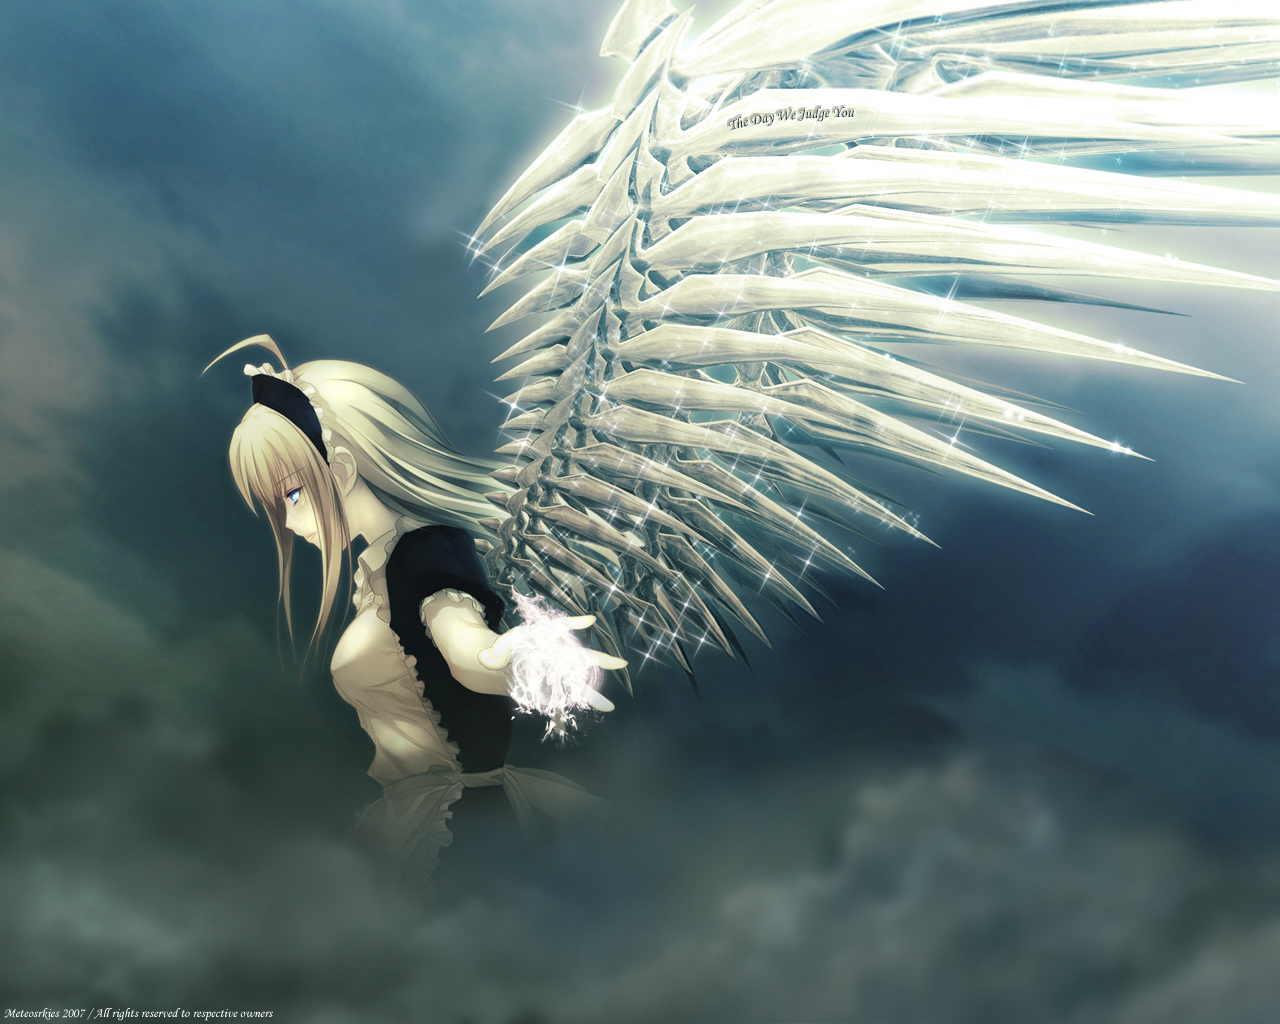 3d обои Девушка ангел с хрустальными крыльями в темных небесах (Metcosrkies 2007  / All right reserved to respective owners)  ангелы # 19378